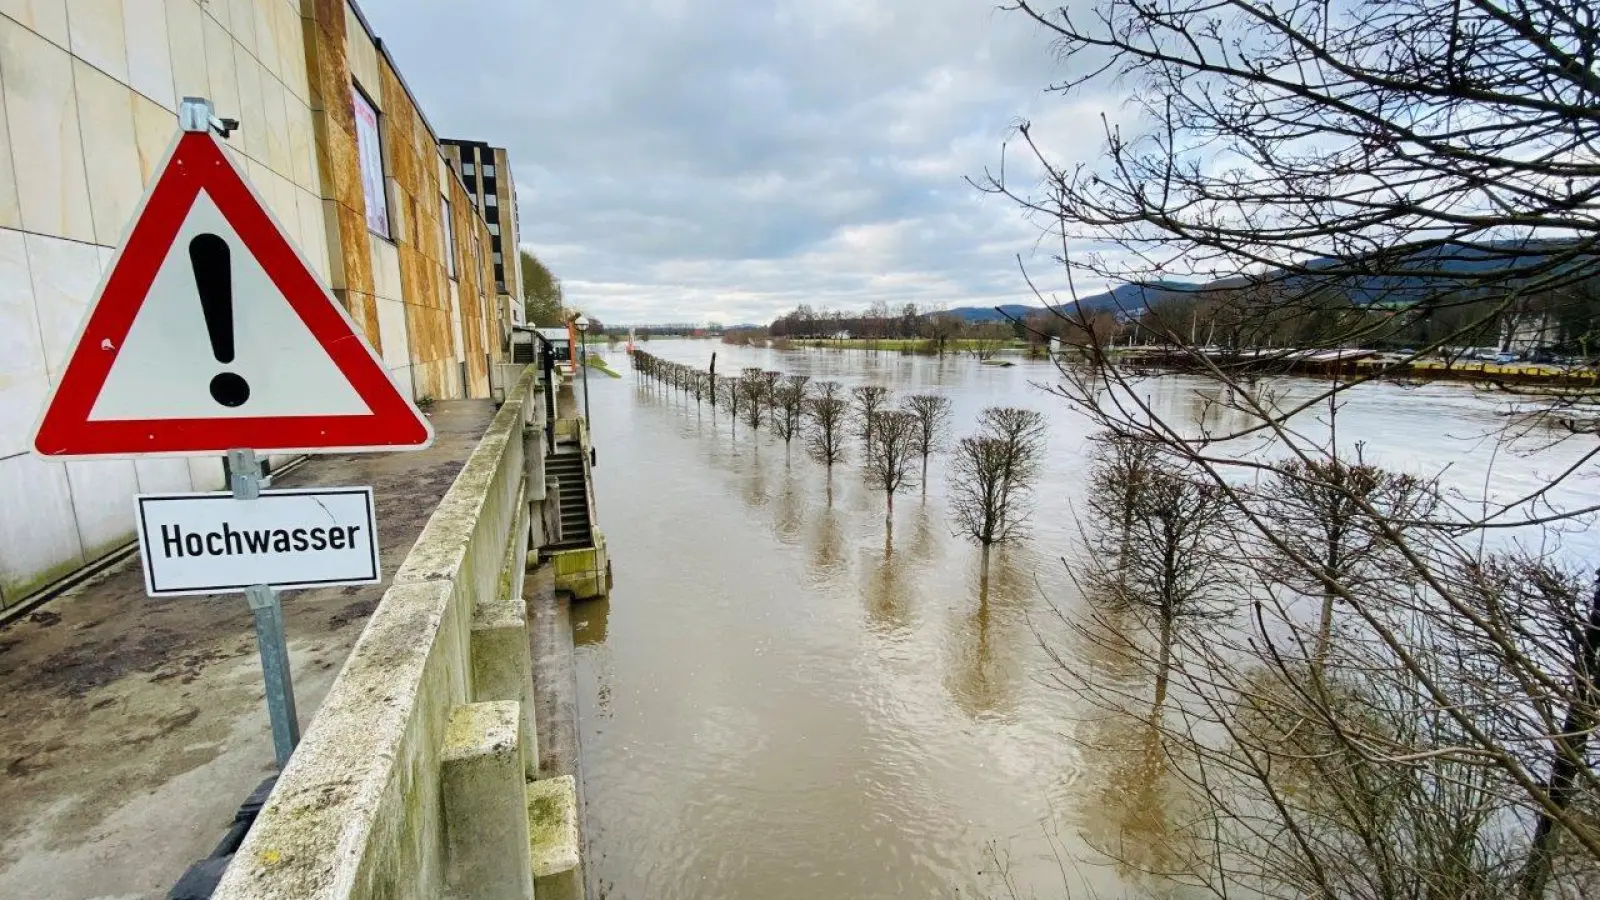 Auch ohne Warnschild wäre der hohe Wasserstand der Weser deutlich erkennbar.  (Foto: ssw)